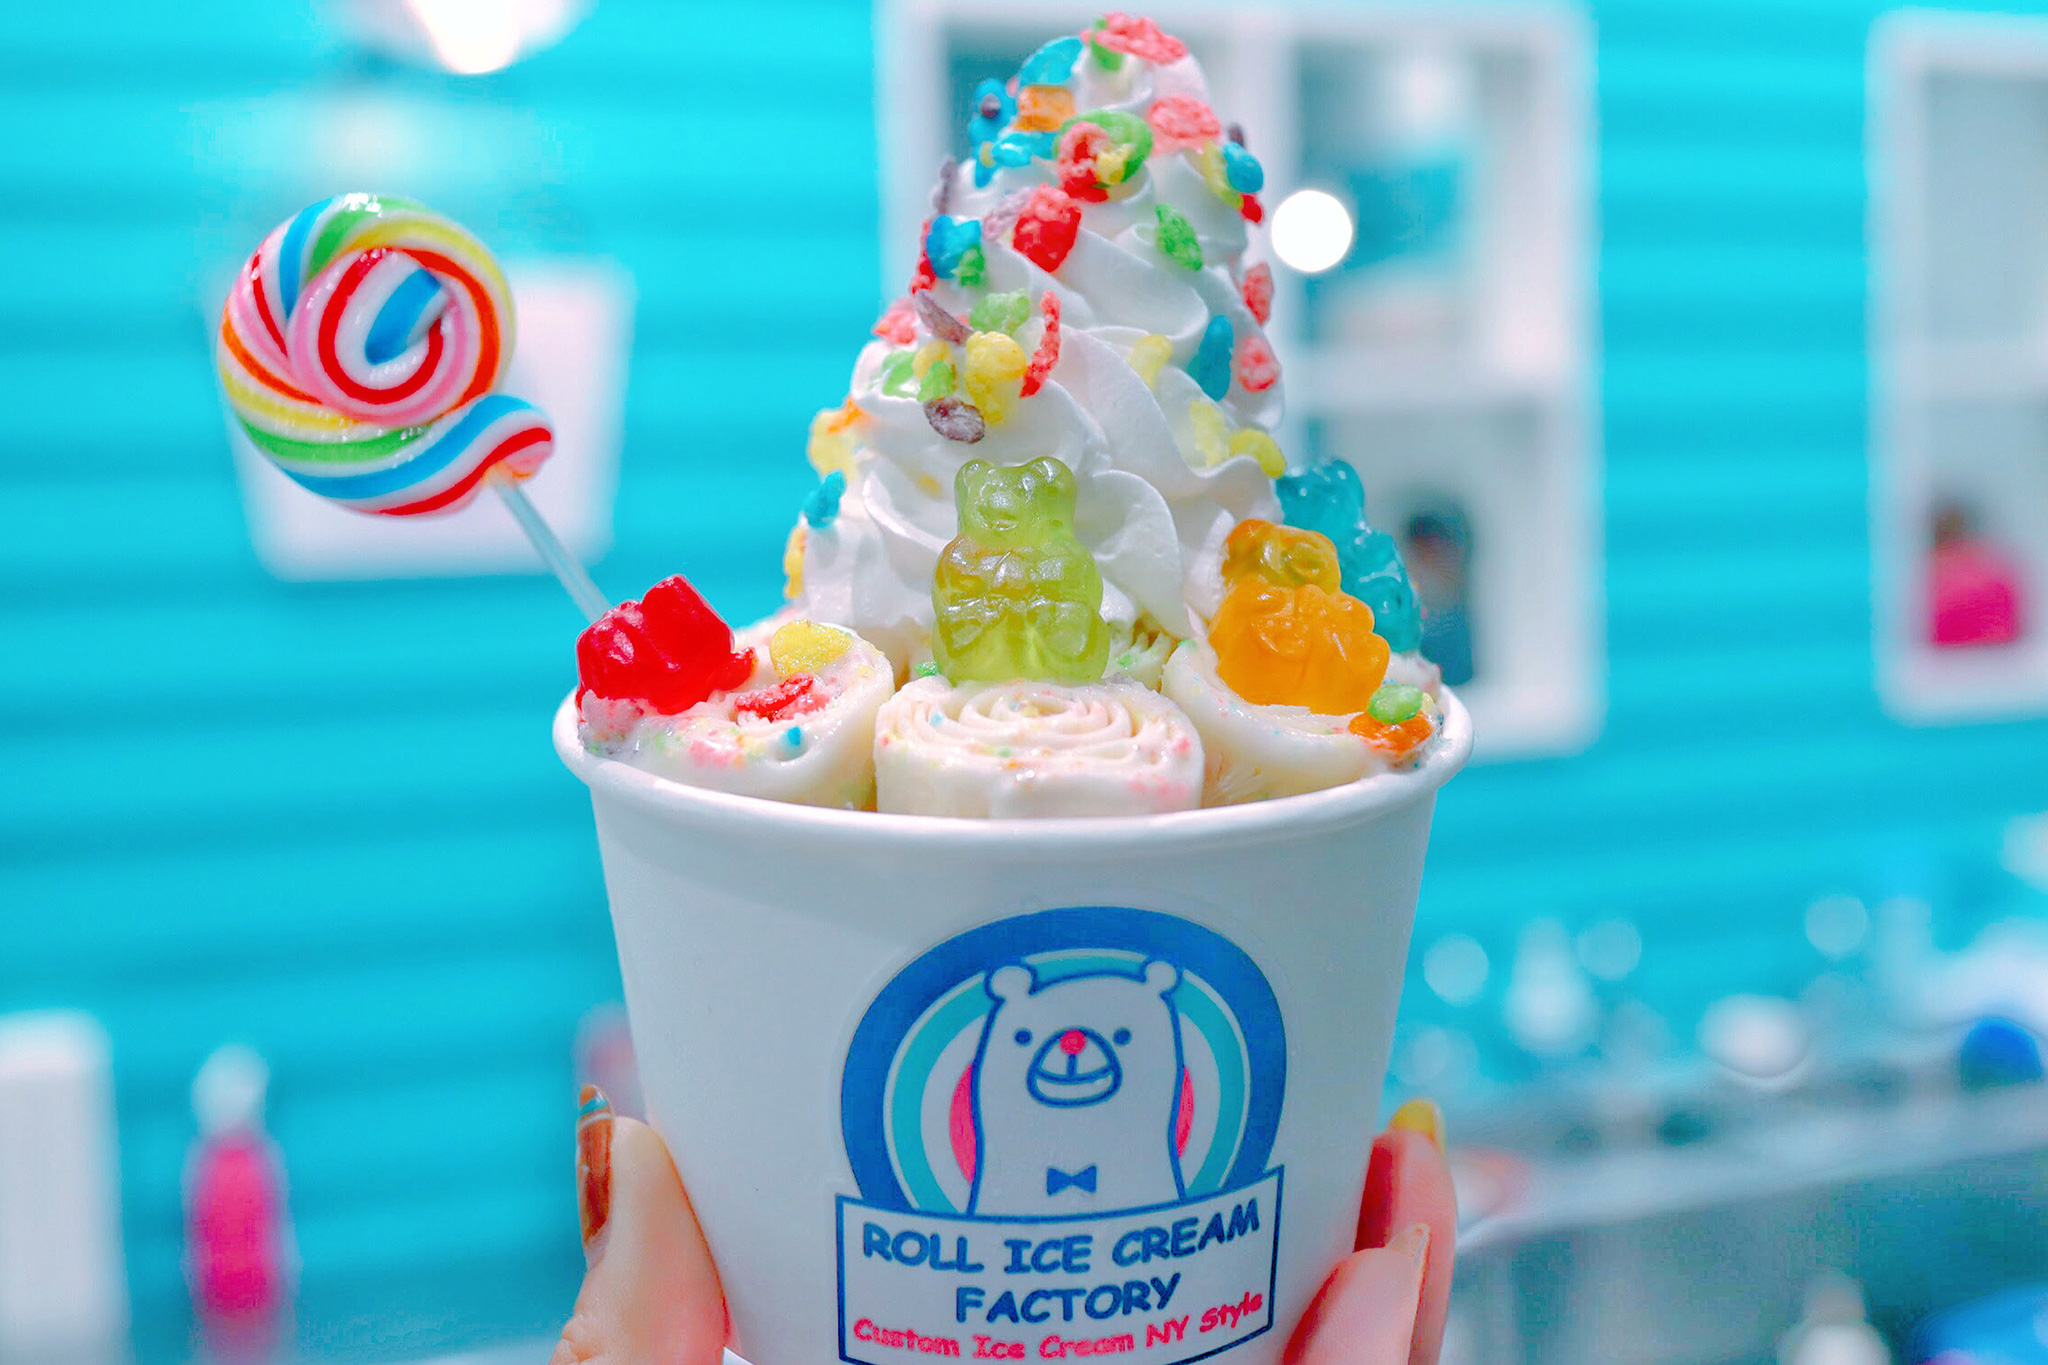 インスタ映え抜群 虹色が最強に可愛いレインボーロールアイスクリームのフリー画像 おしゃれなフリー写真素材 Girly Drop